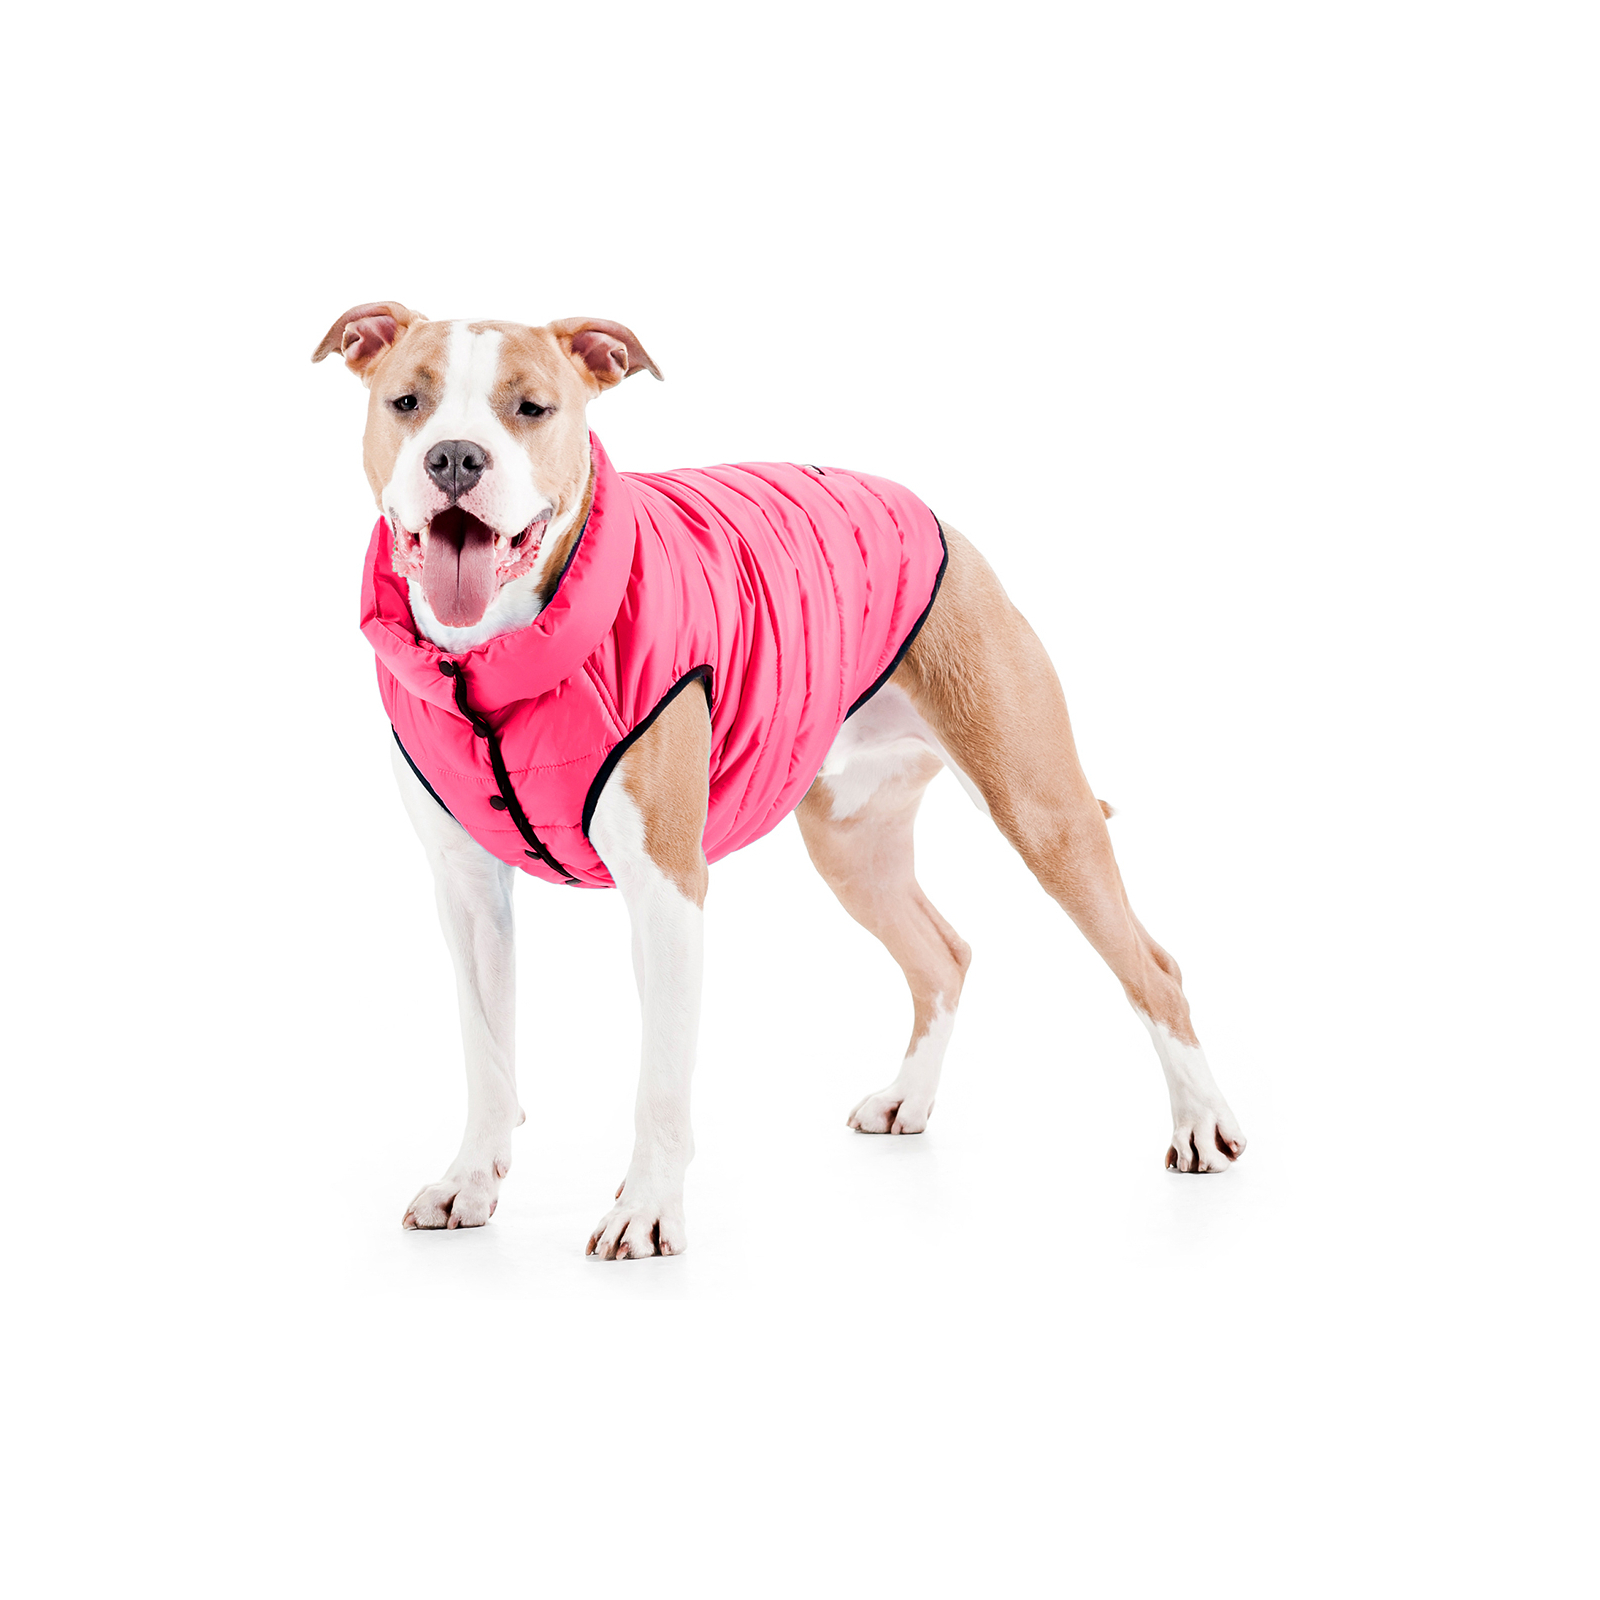 Курточка для животных Airy Vest One L 55 розовая (20747) изображение 3